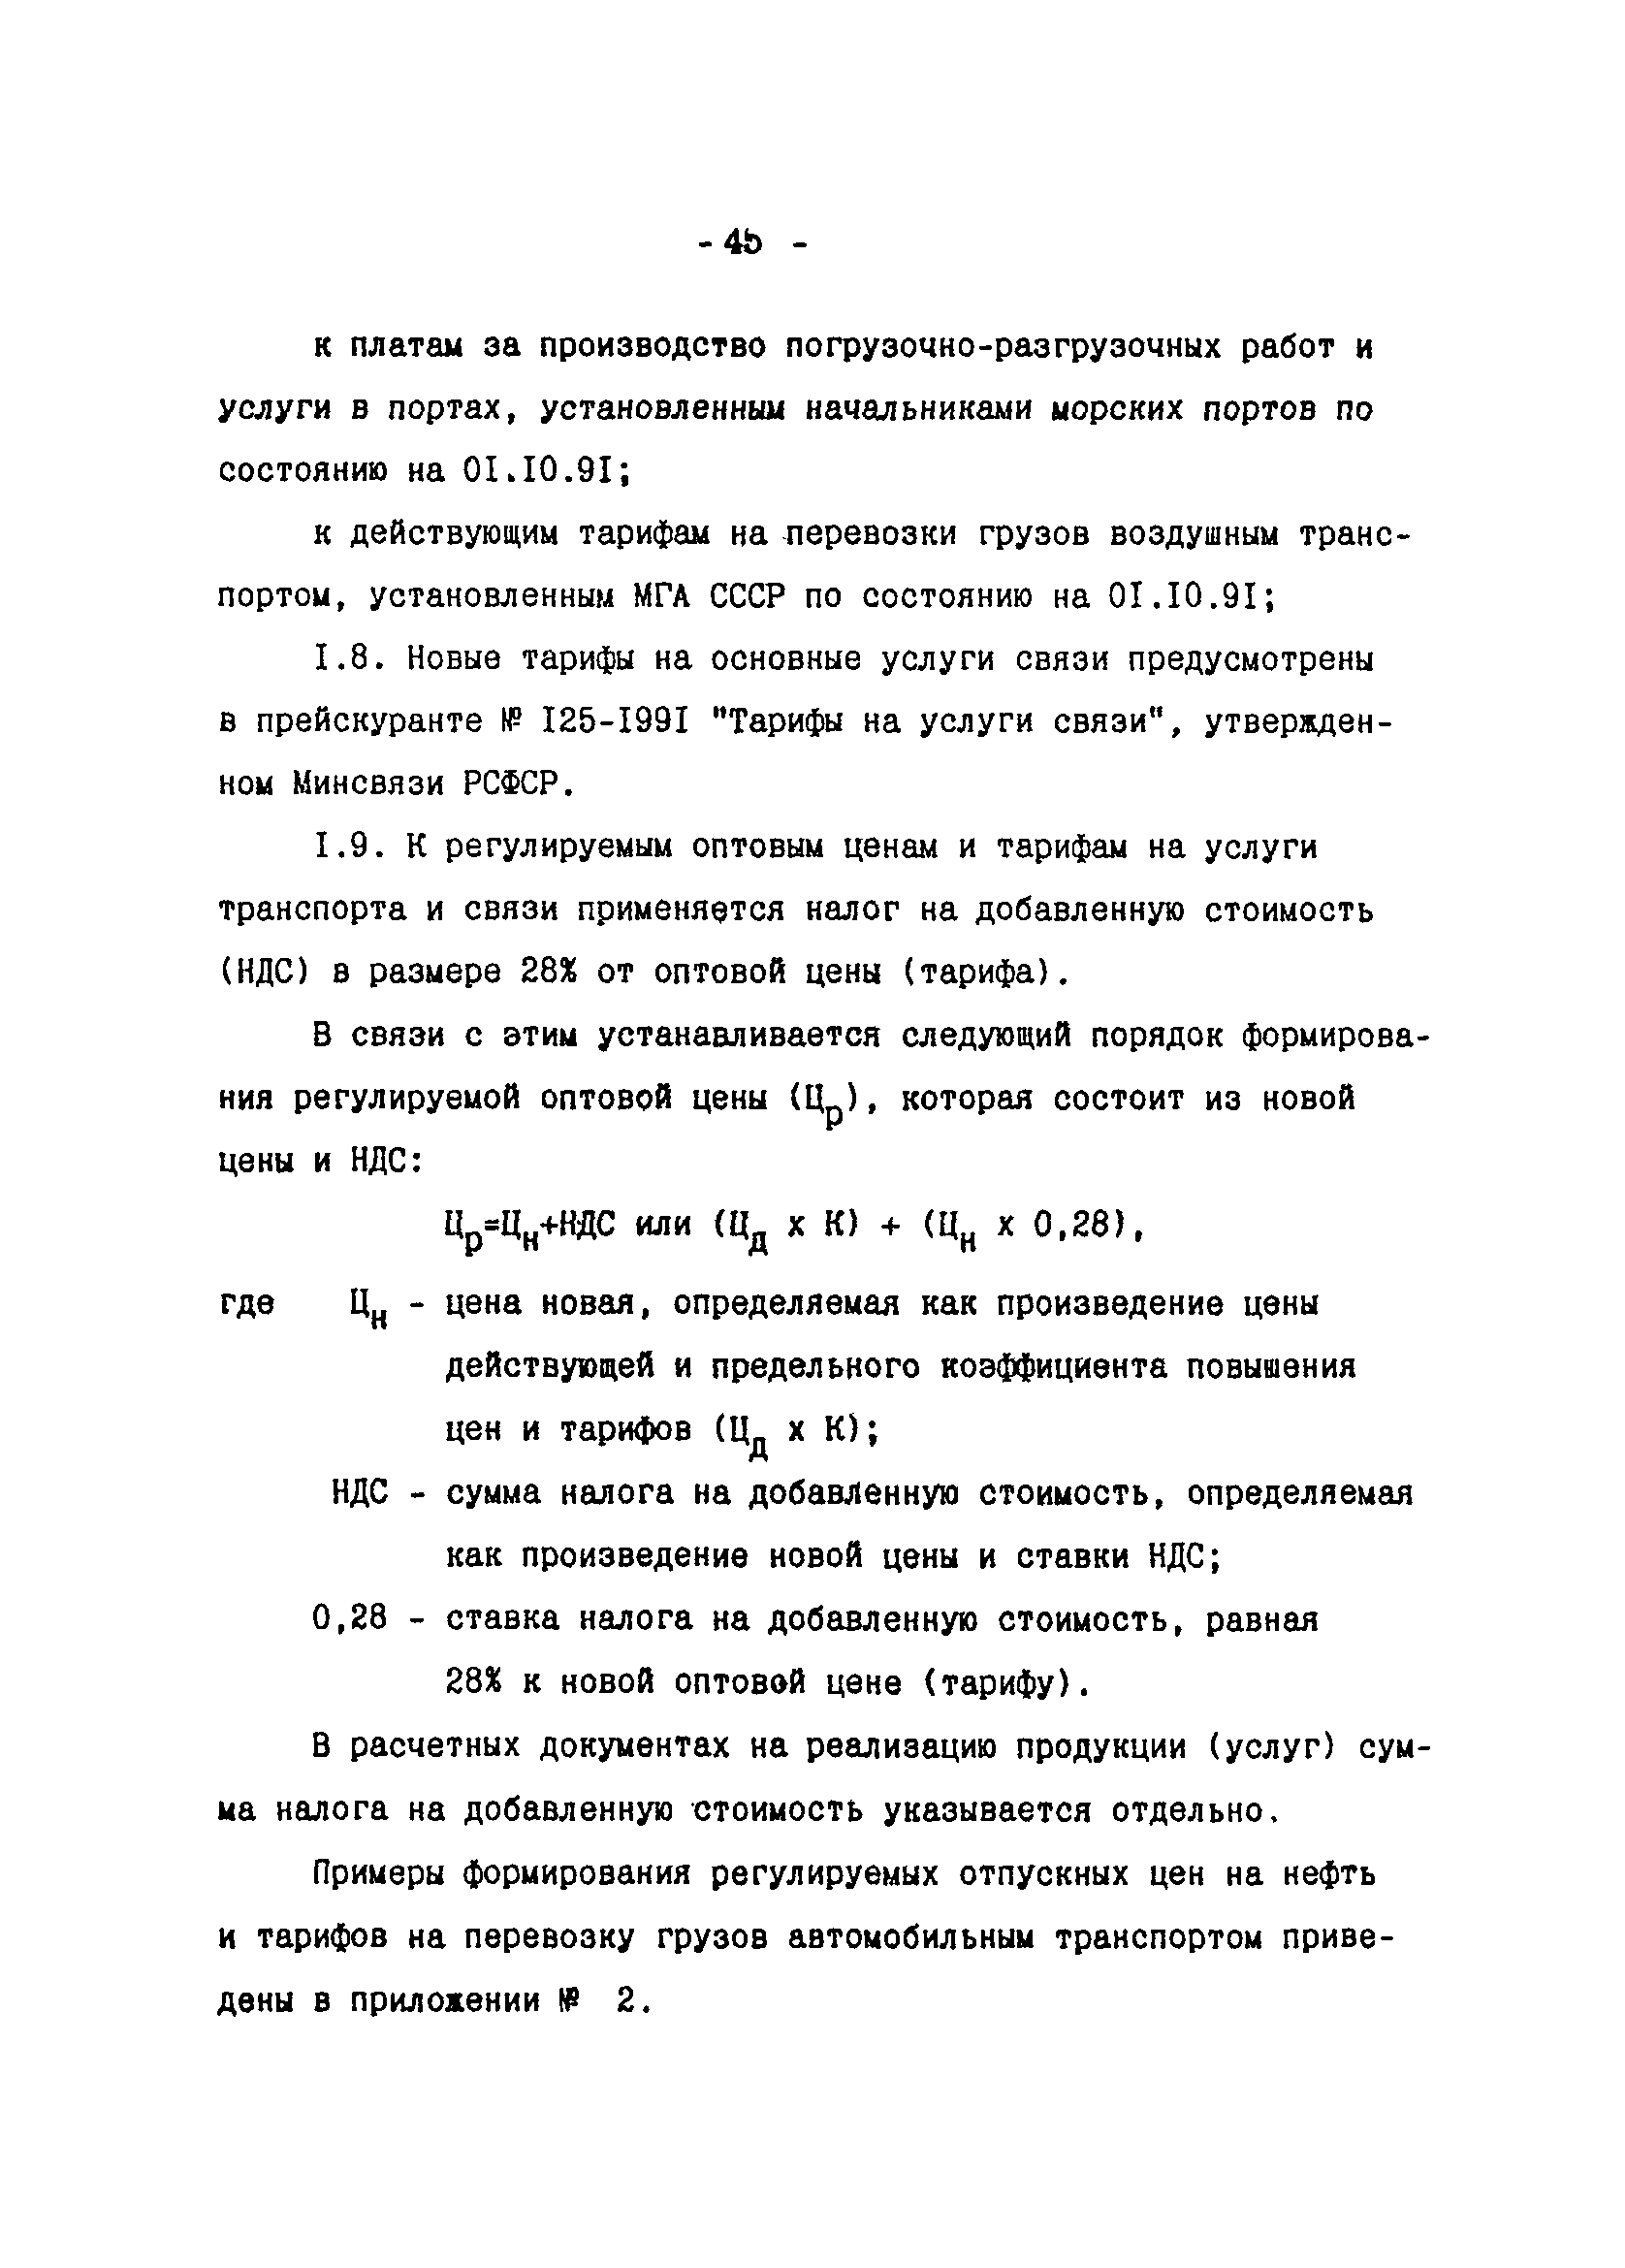 Методические указания 1-92